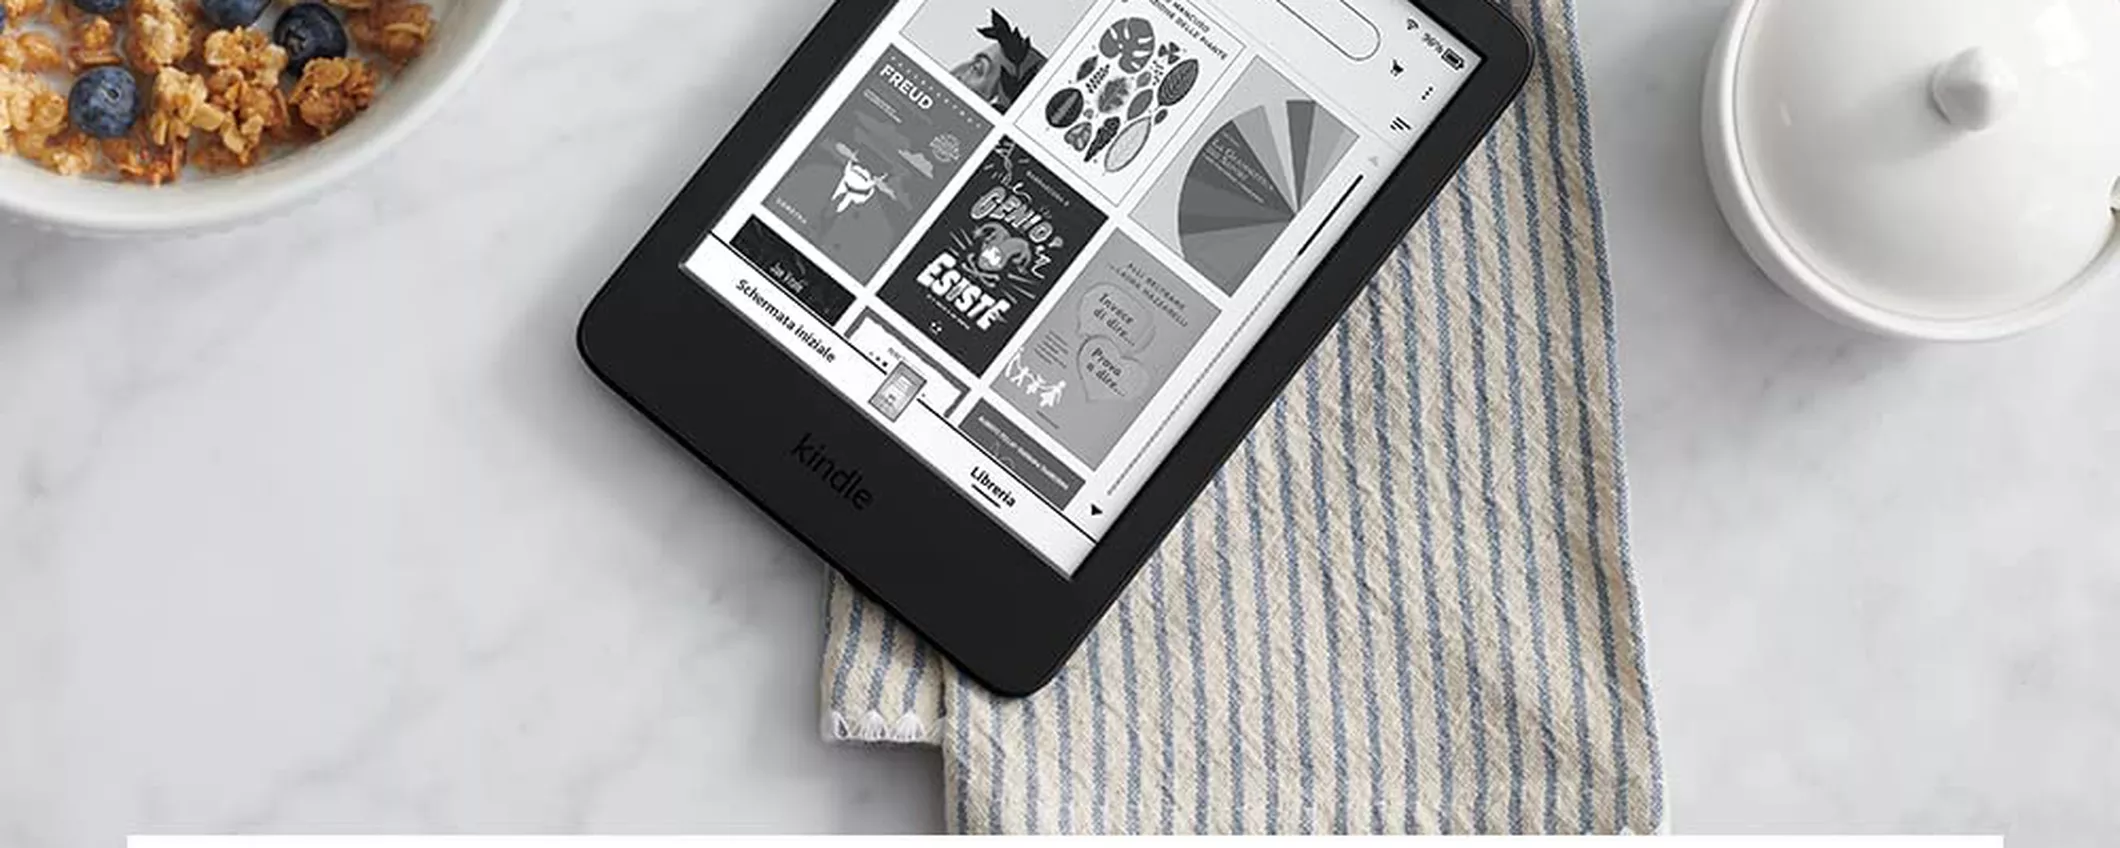 Il nuovo Kindle finalmente in sconto su Amazon: offerta TOP a 89€